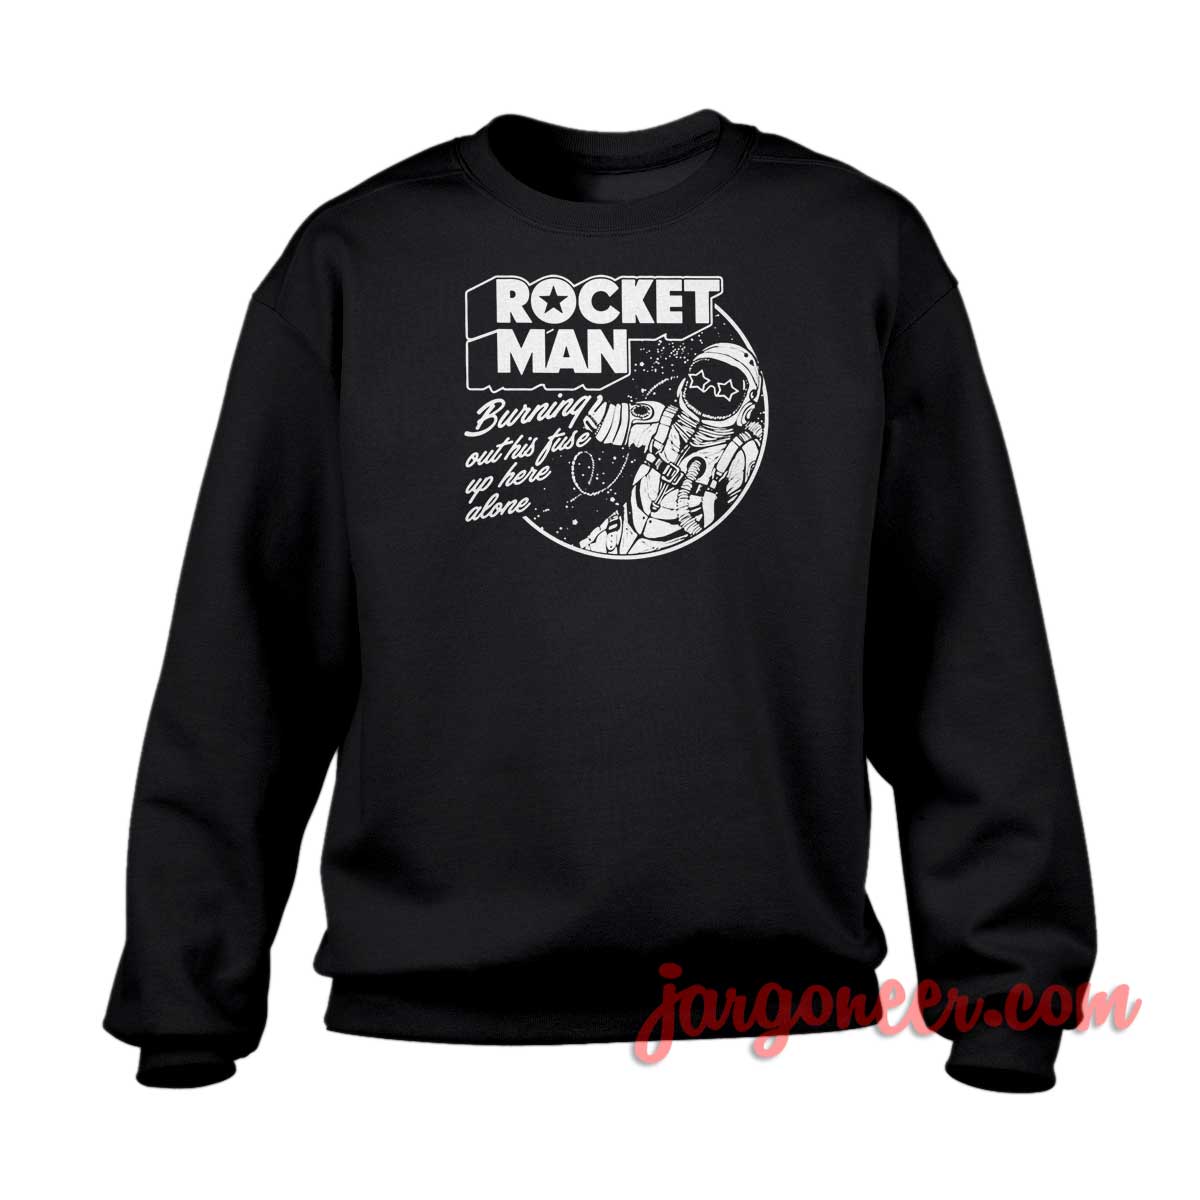 Rocket Man 1 - Shop Unique Graphic Cool Shirt Designs